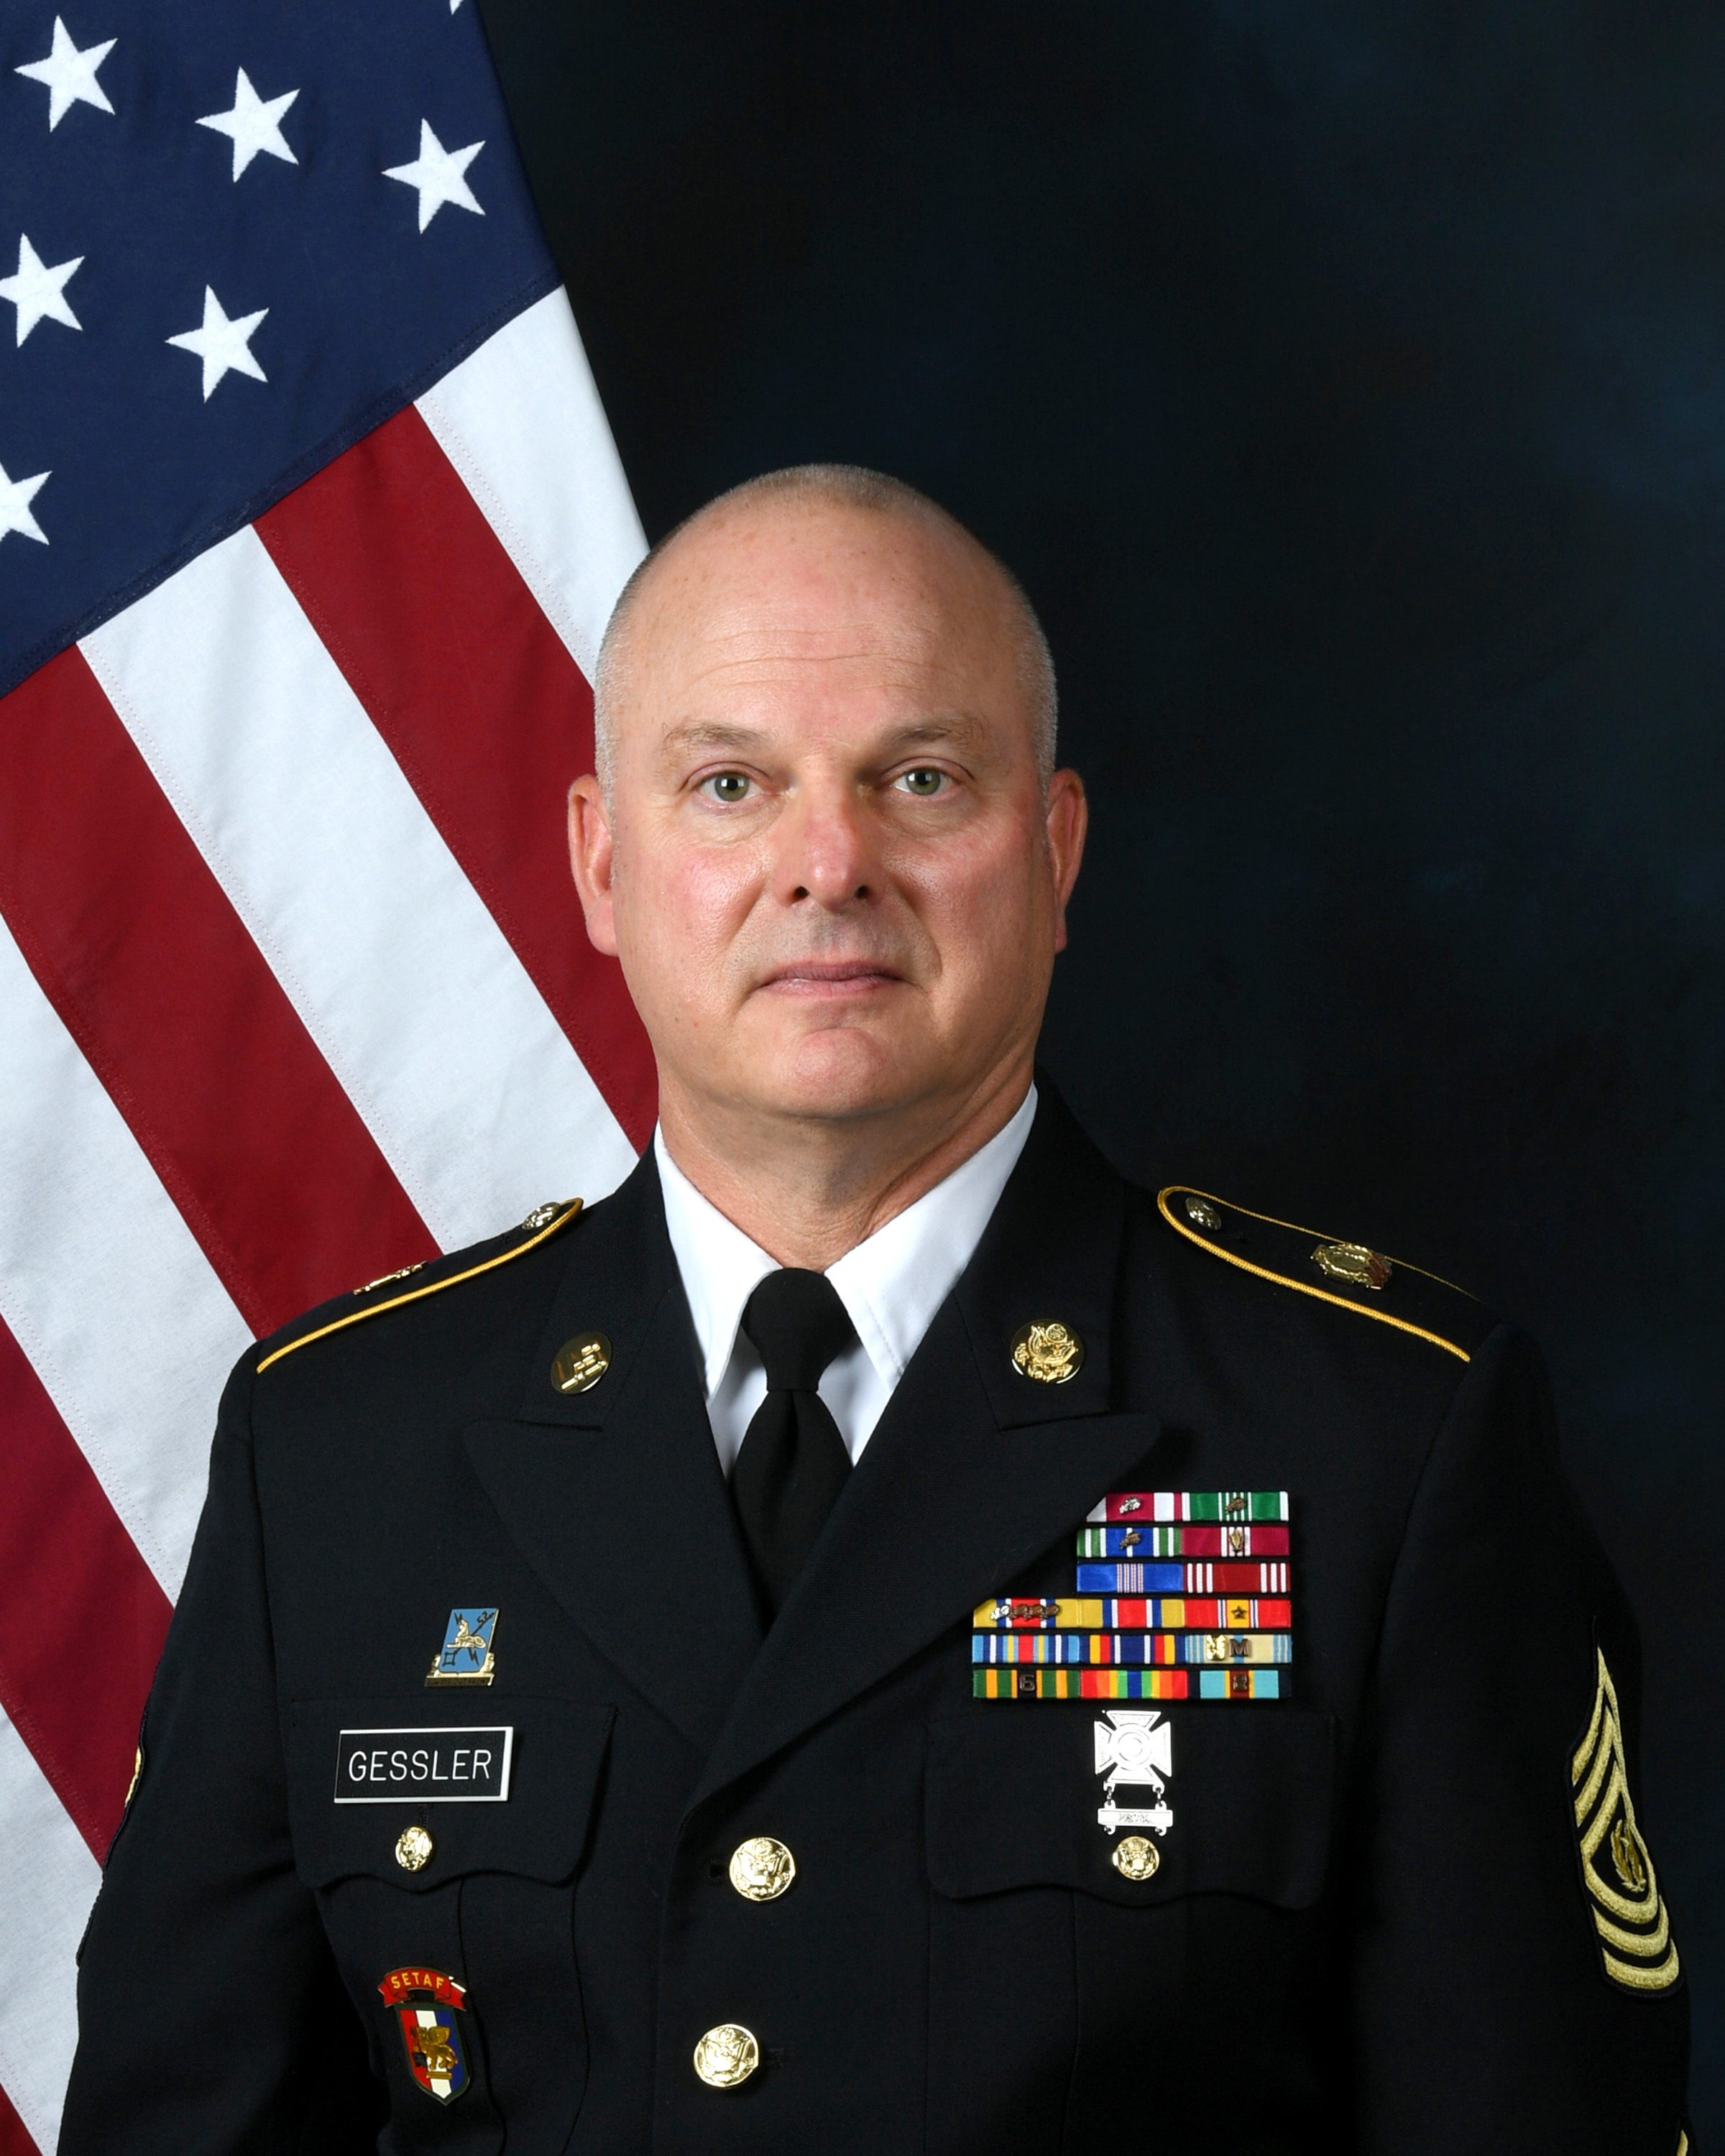 Command Sgt. Maj. Robert L. Gessler